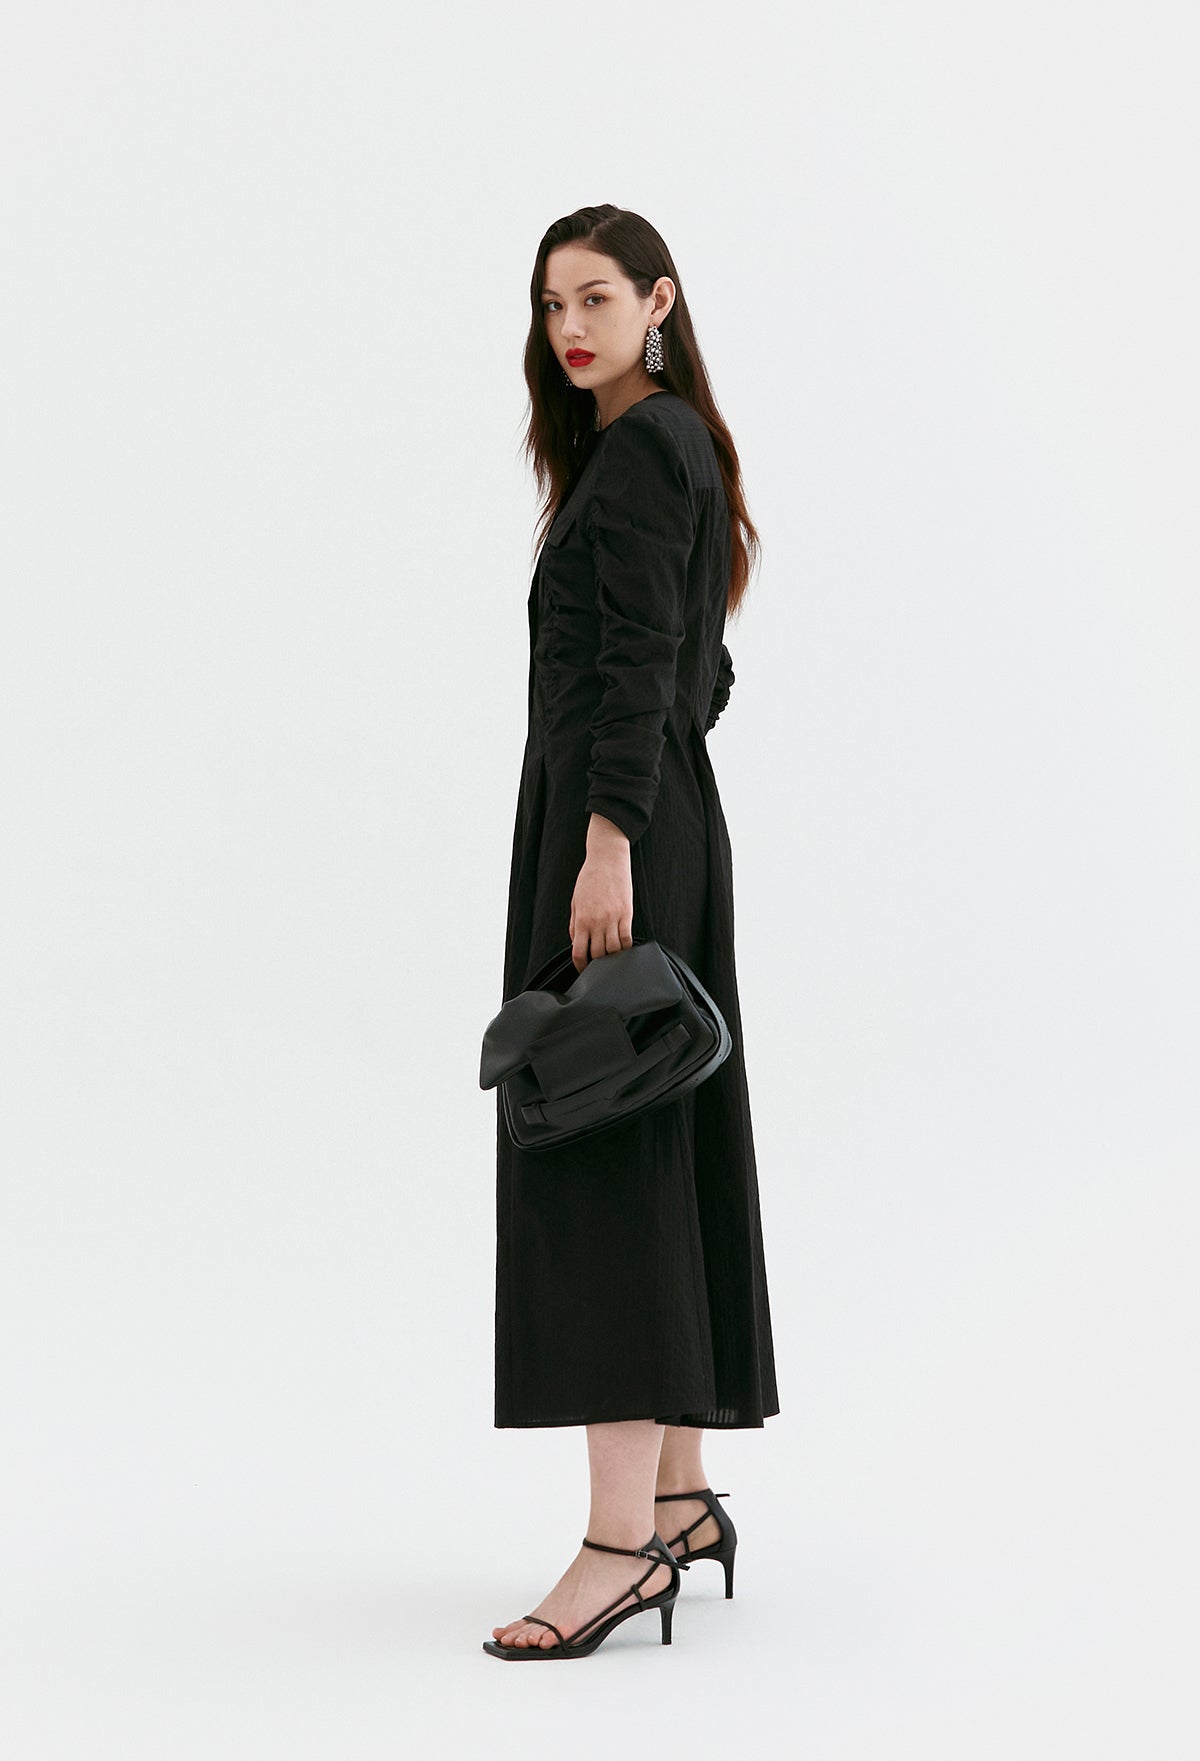 Ruched Pocket-detail Dress In Black